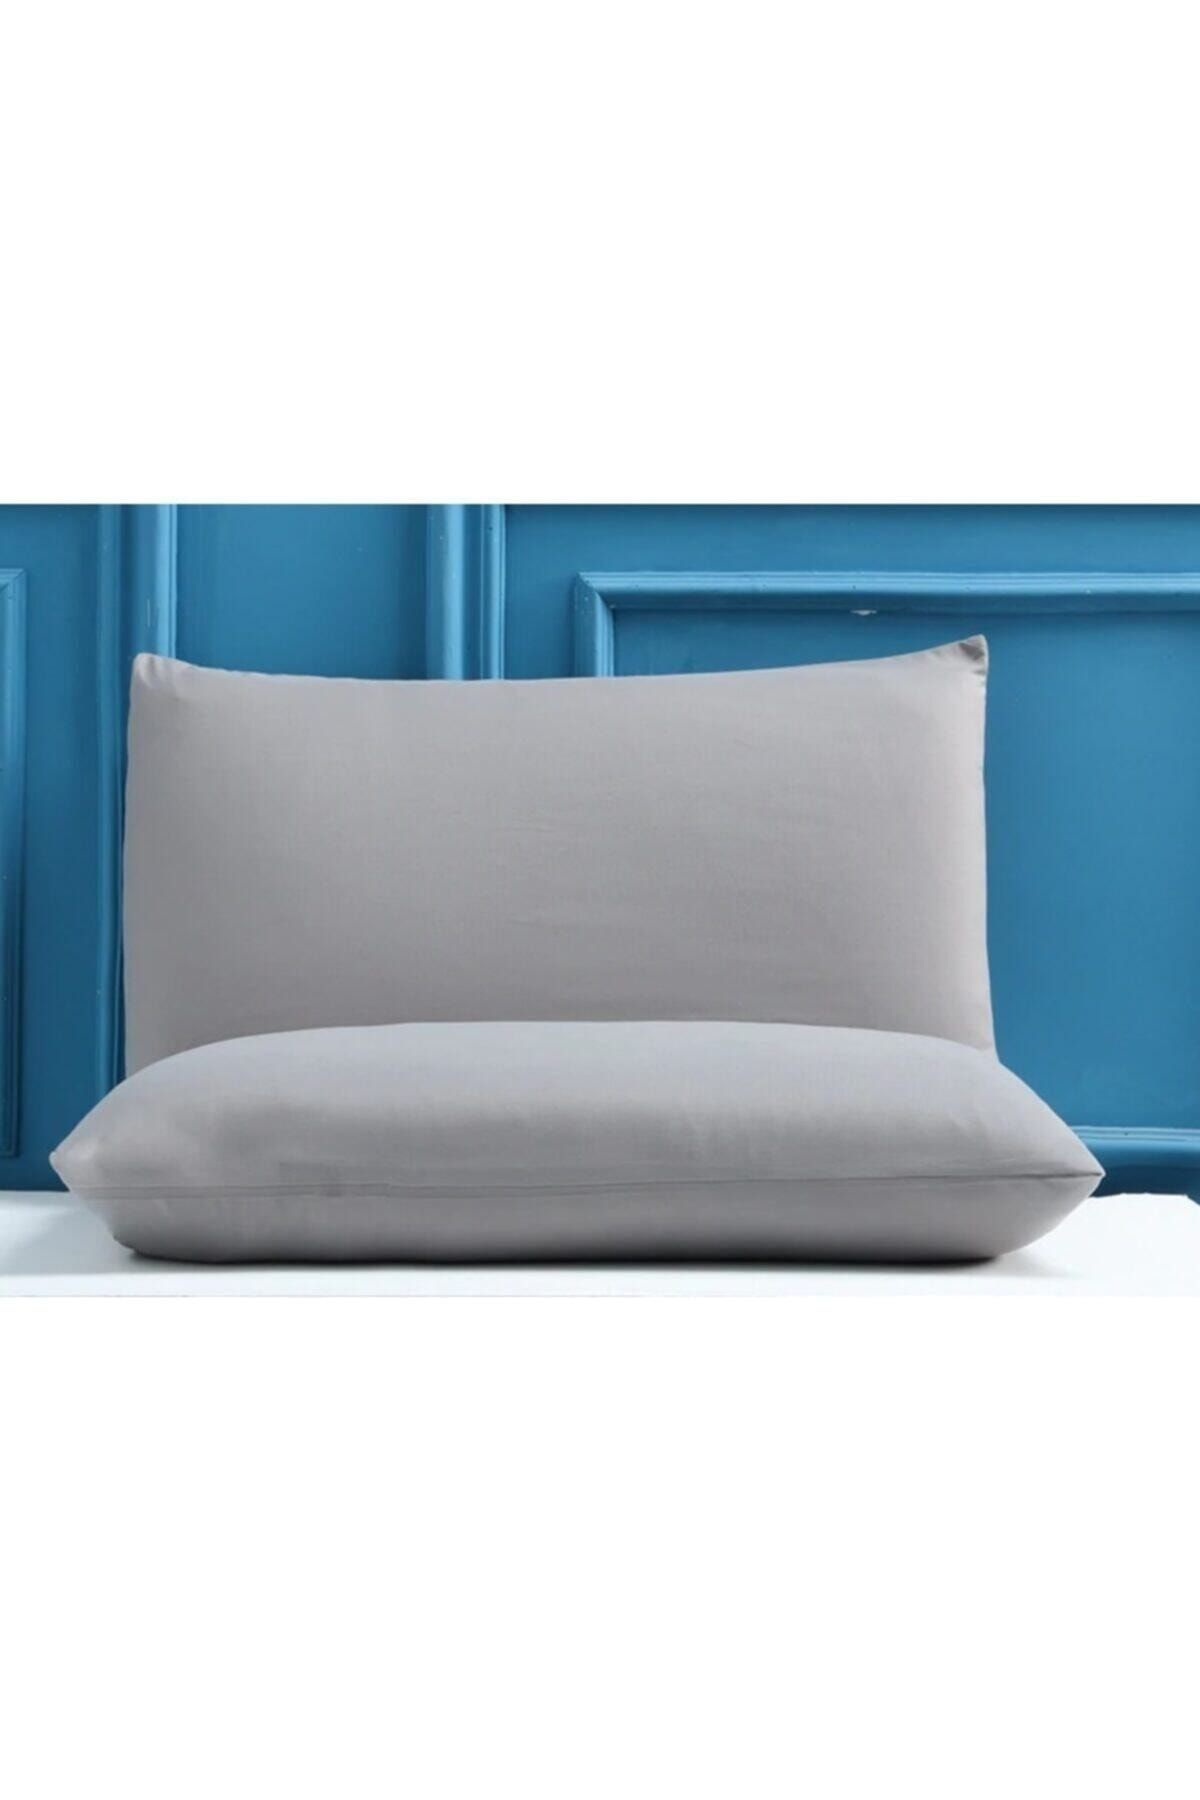 İz Home Comfort Gri Yastık Kılıfı 2li Set Pamuk (50x70)